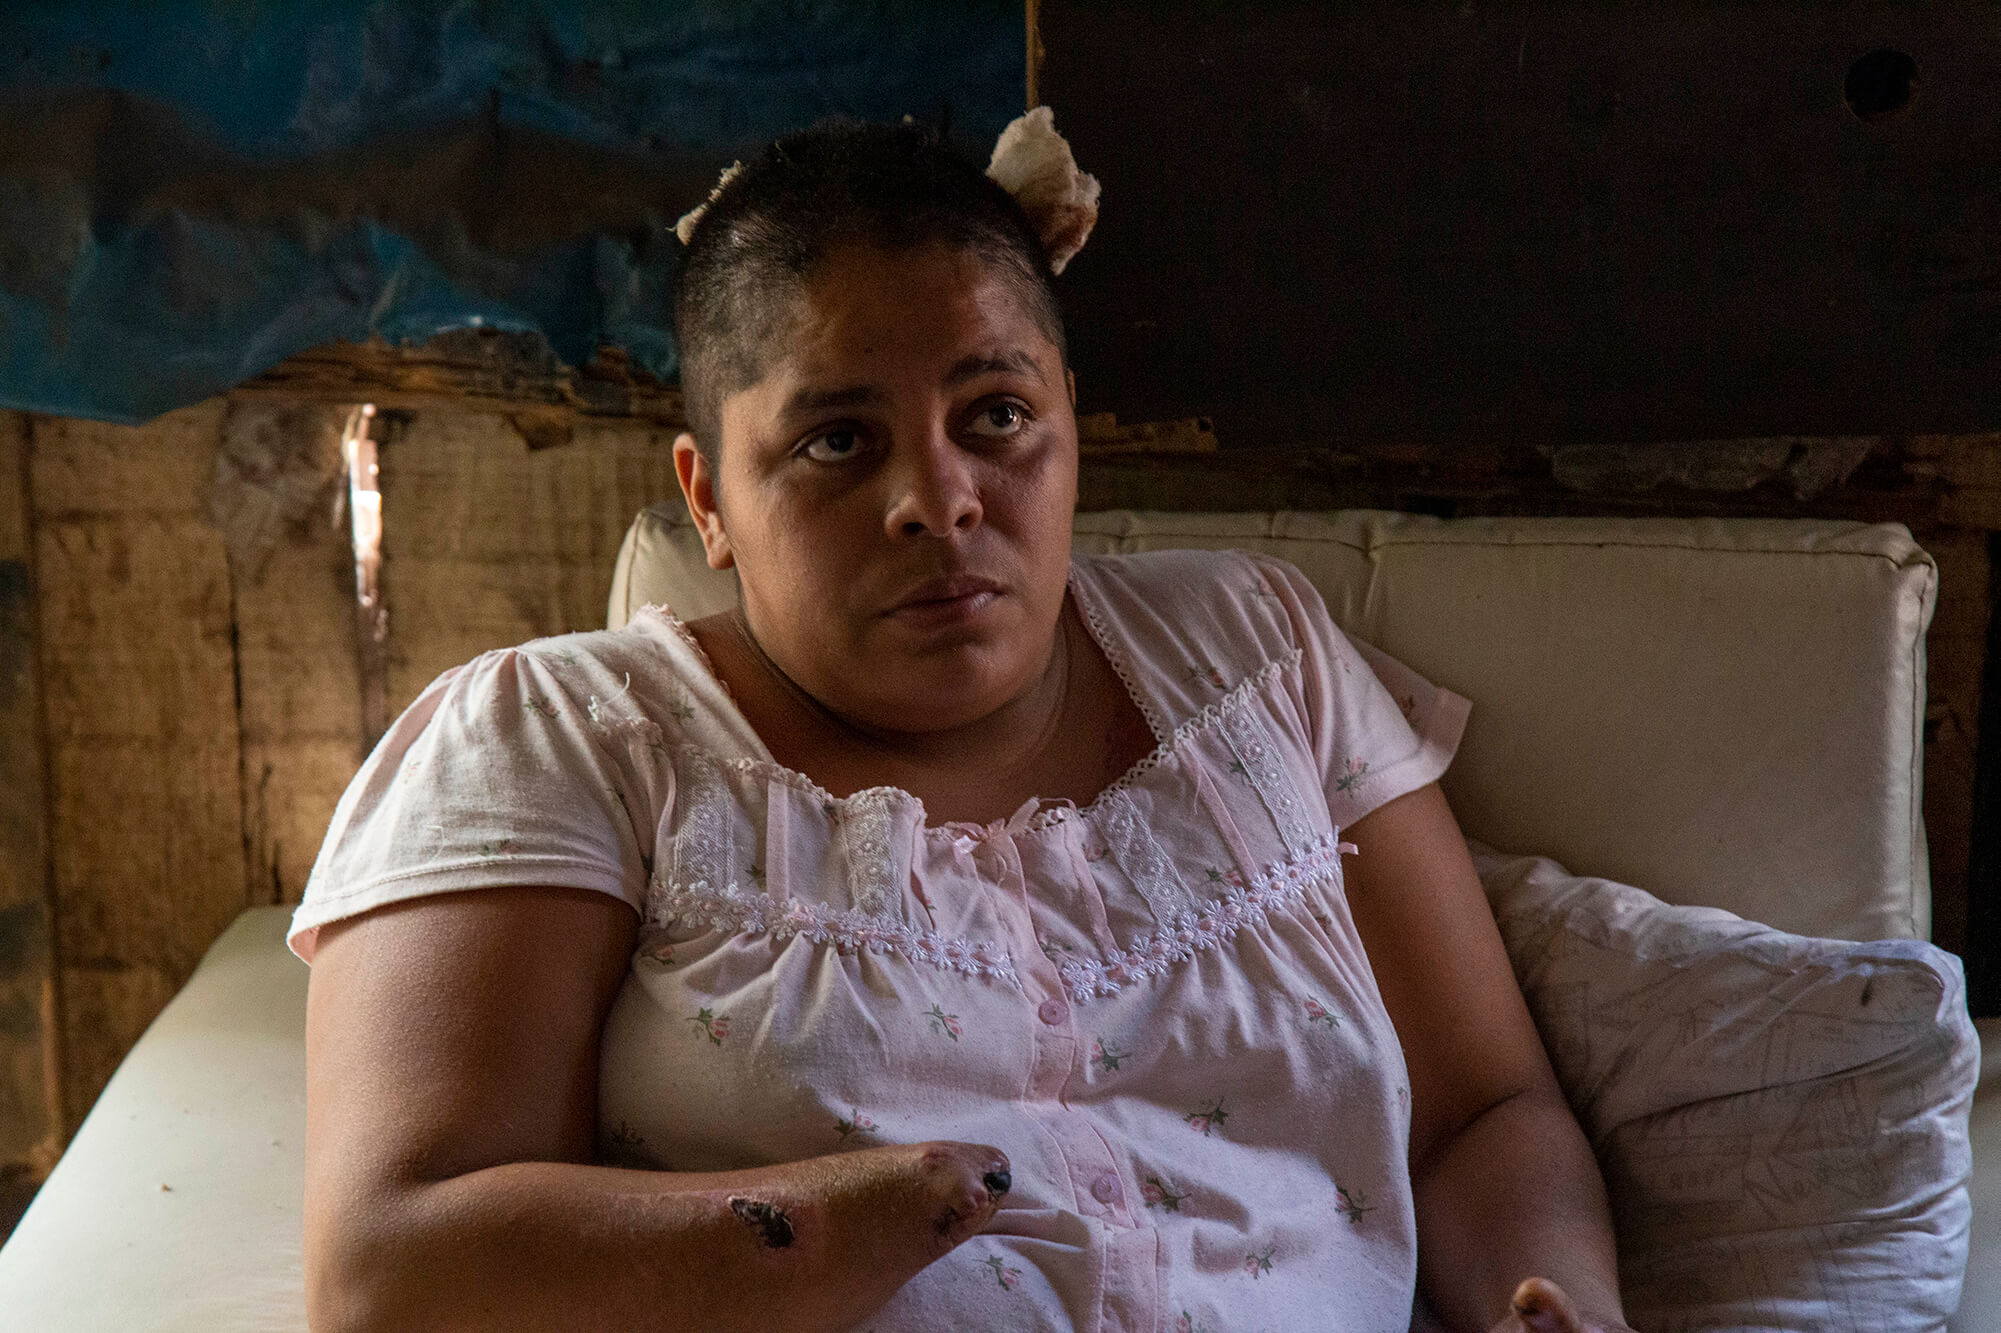 acoso sexual en honduras 2022 violencia hacia las mujeres violencia de genero en honduras noticias hoy feminicidios en feminicidio